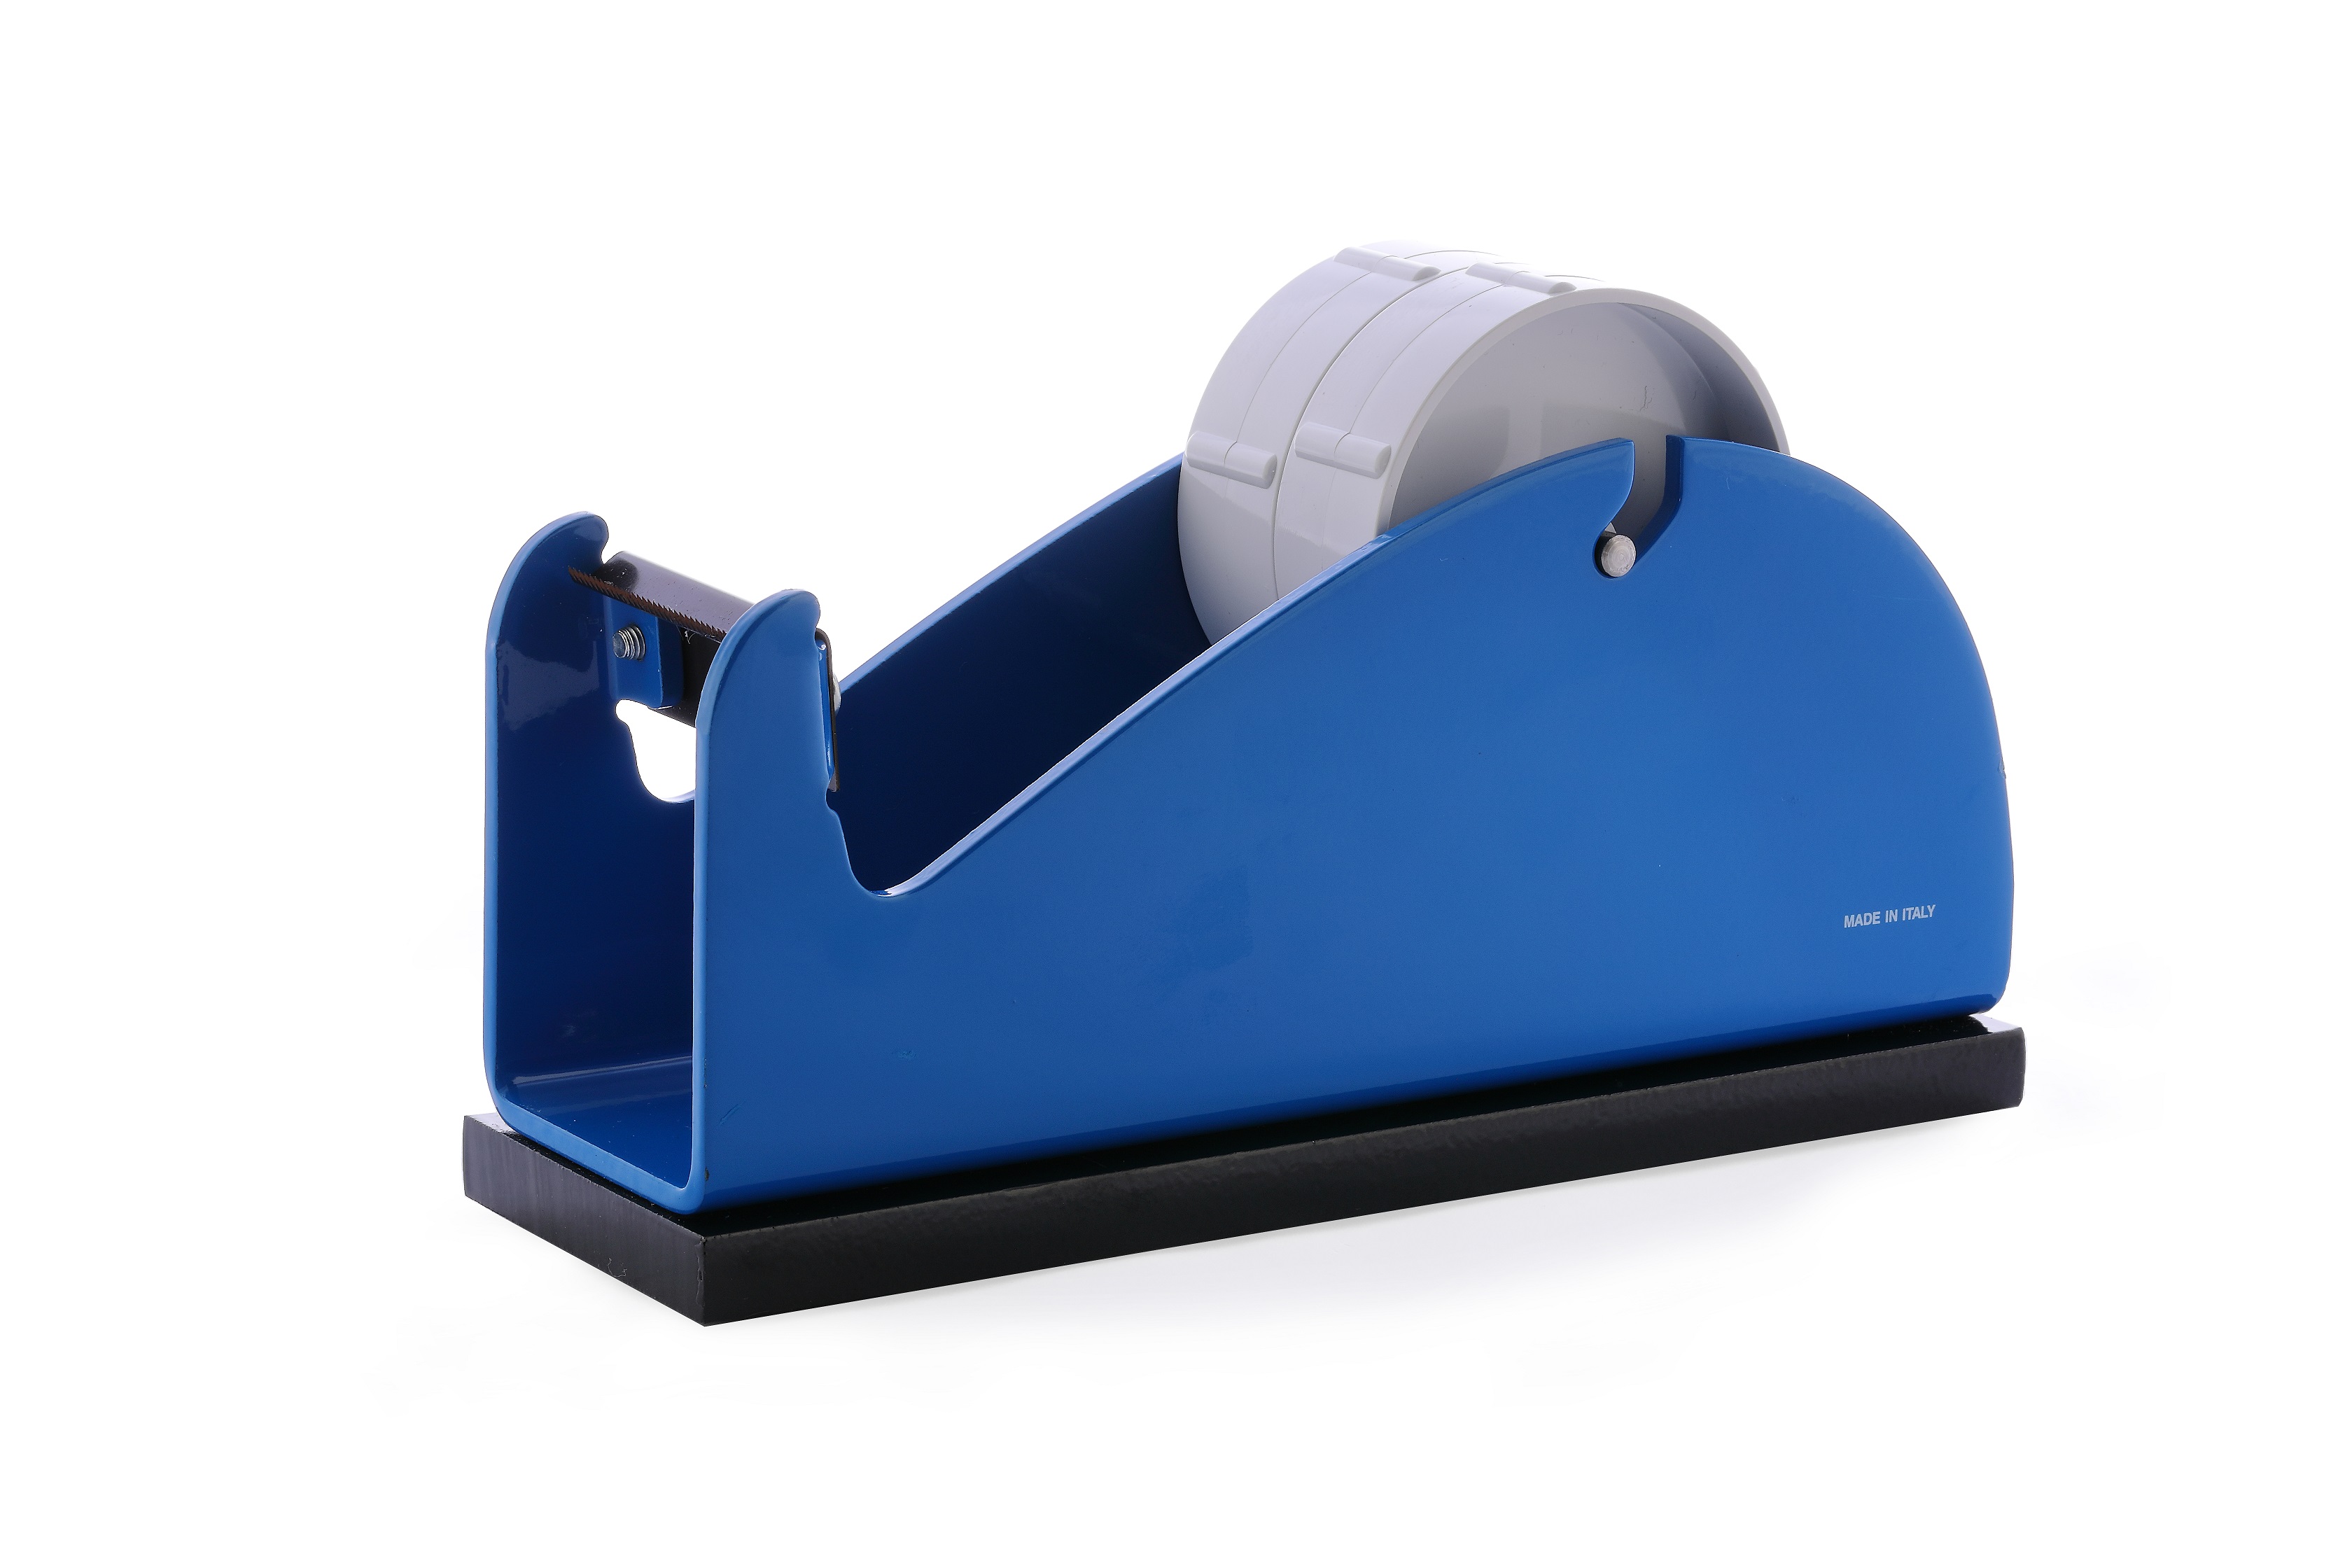 Klebeband-Tischabroller Blau, mit beschwerender Platte, für 1-2 Rollen,2 x 25mm Bandbreite, 145mm Außendurchmesser